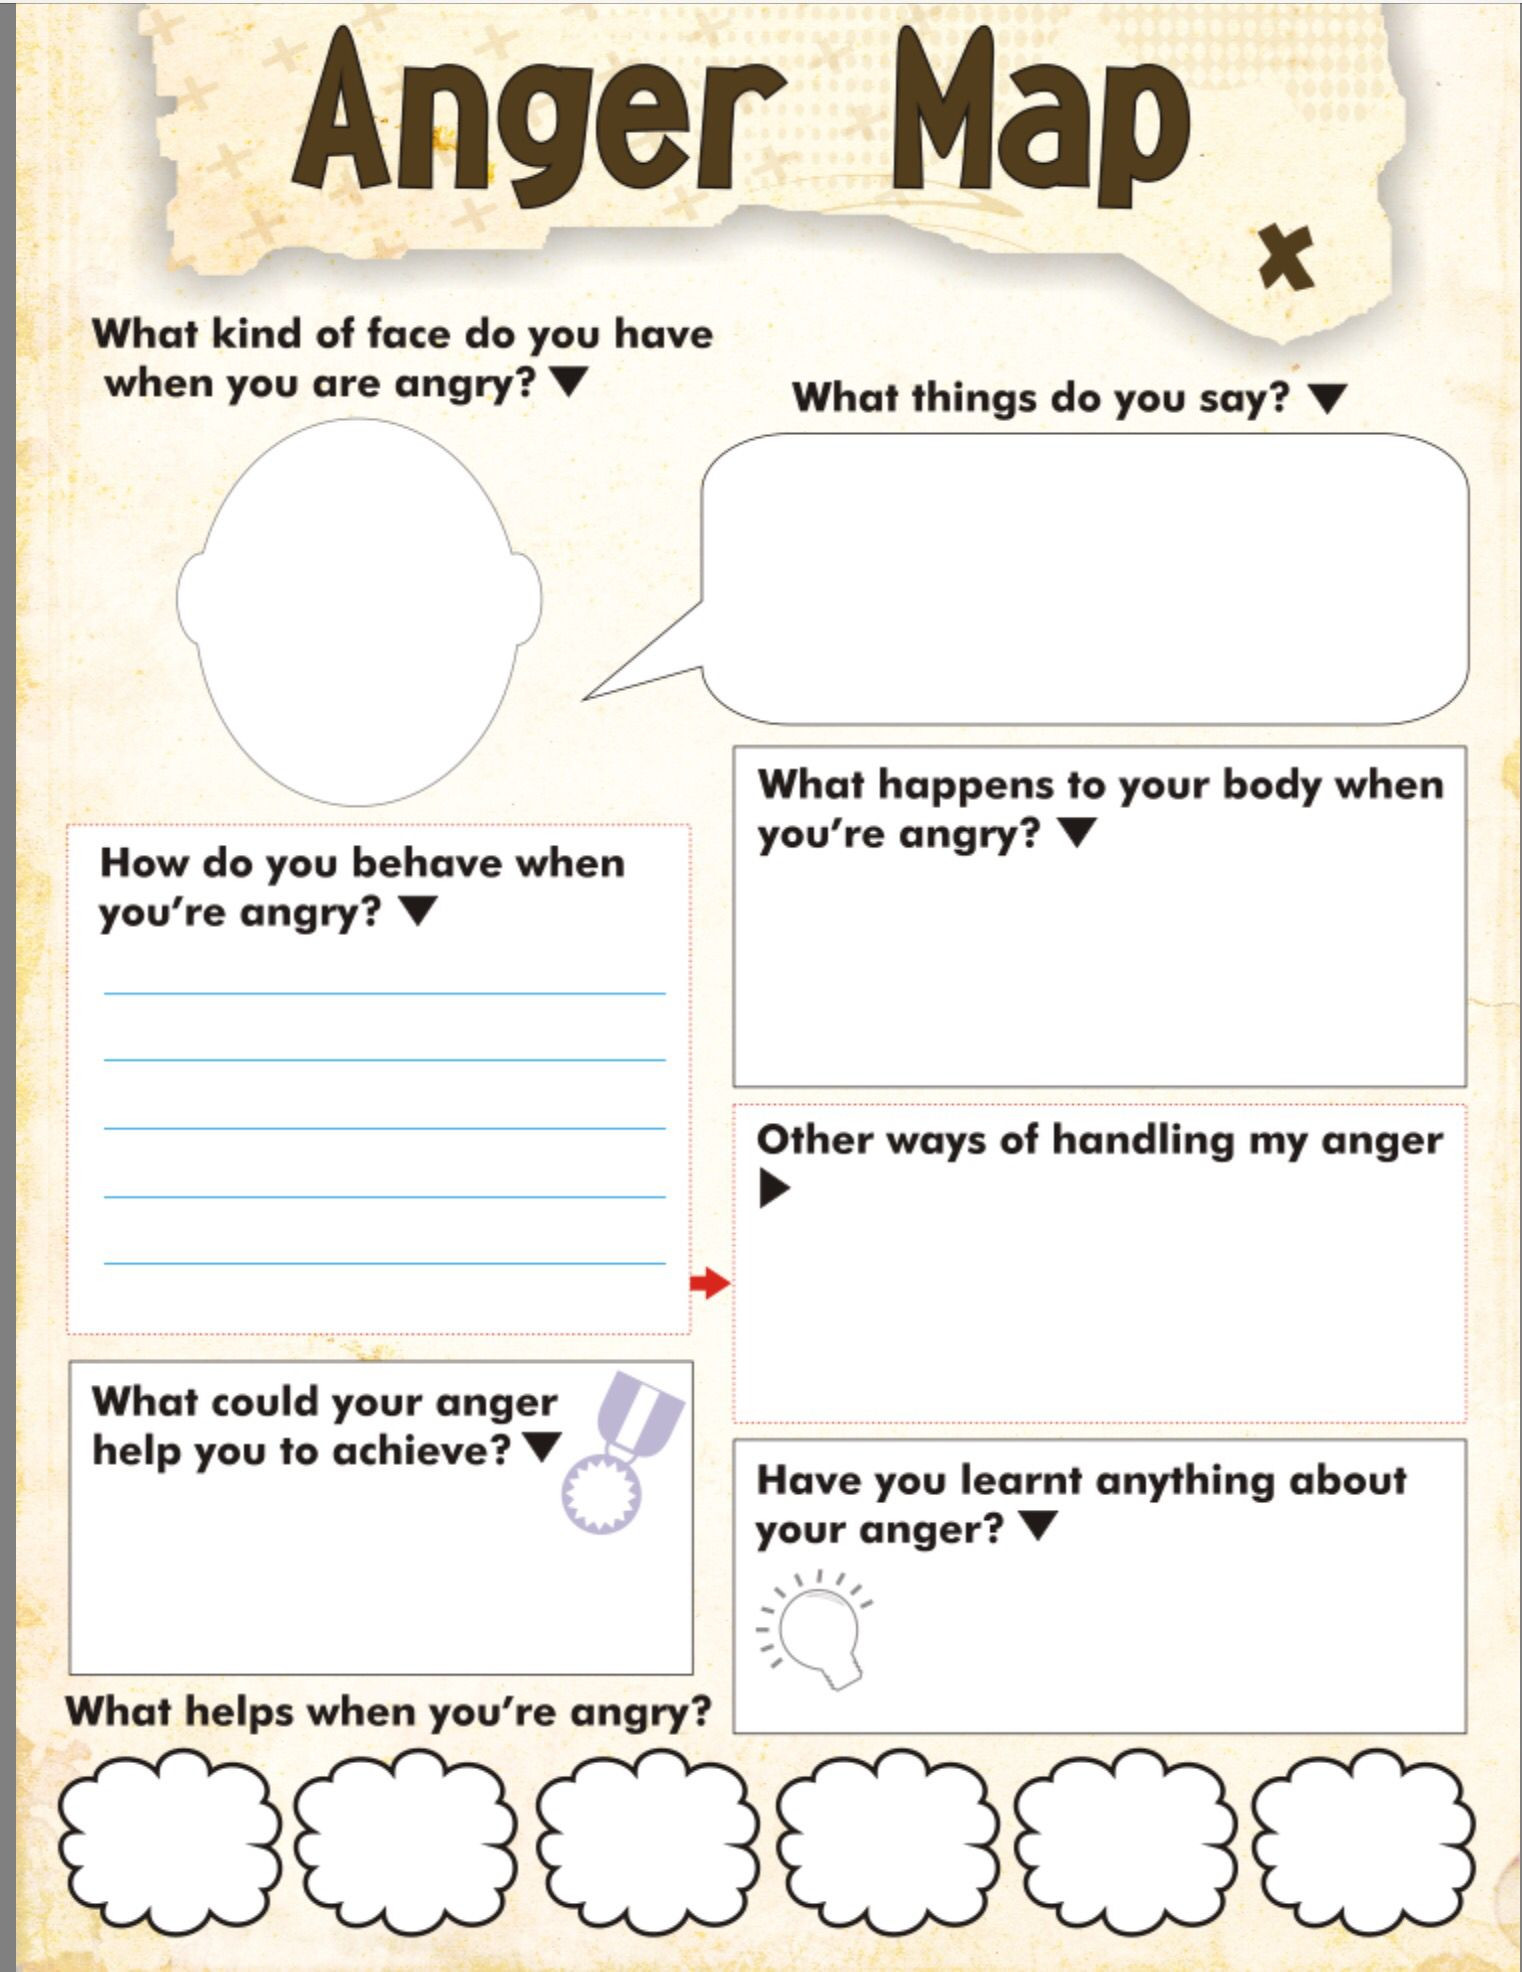 Anger Management Worksheet for Teens Anger Map Kids Worksheet Free Printable